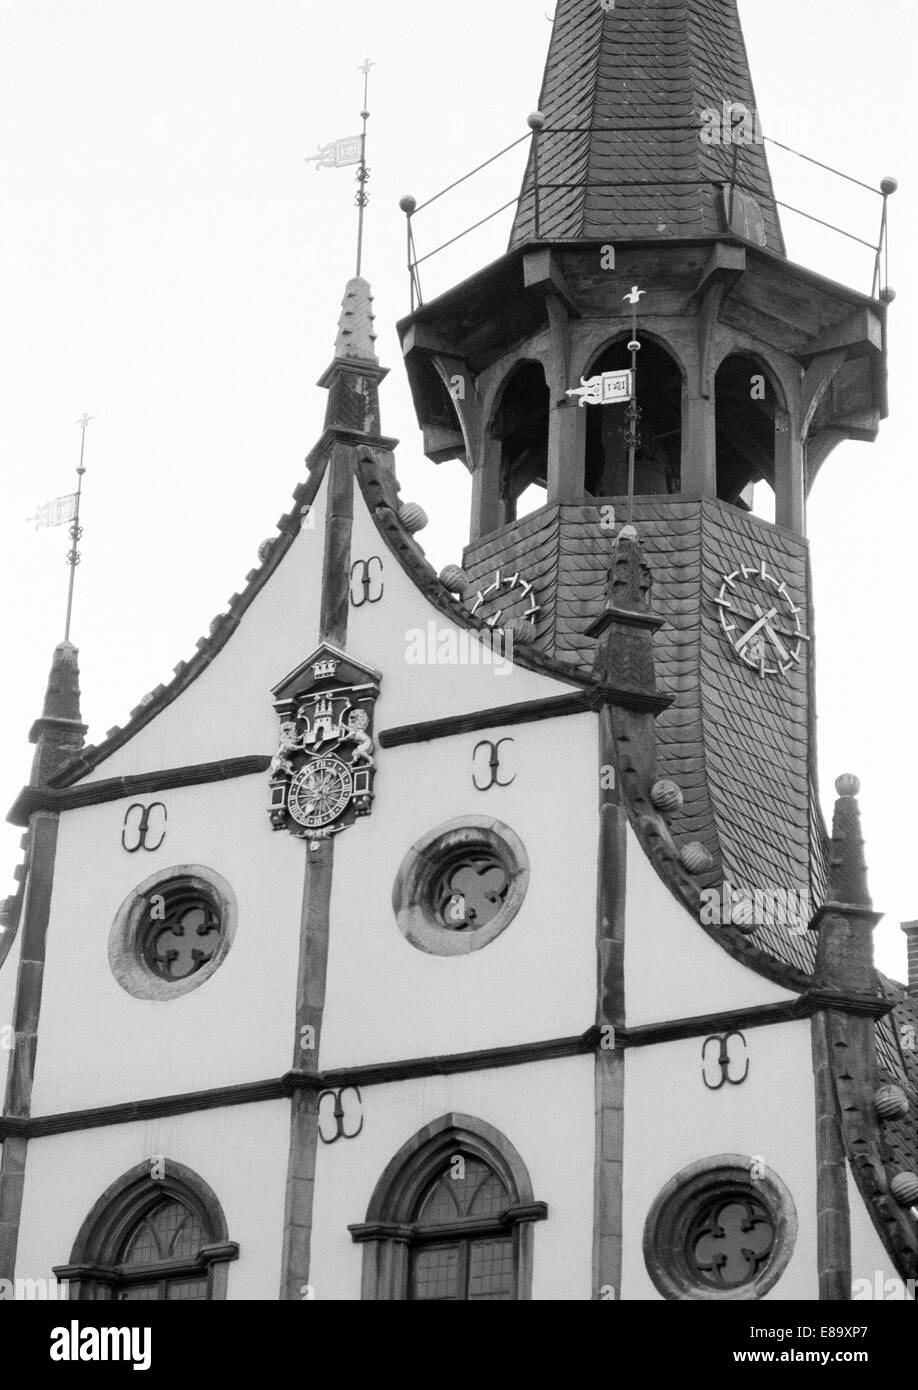 Achtziger Jahre, Renaissancerathaus, Altes Rathaus Steinfurt bin Markt in Nordrhein-Westfalen, Münsterland, Steinfurt, Burgsteinfurt Stockfoto